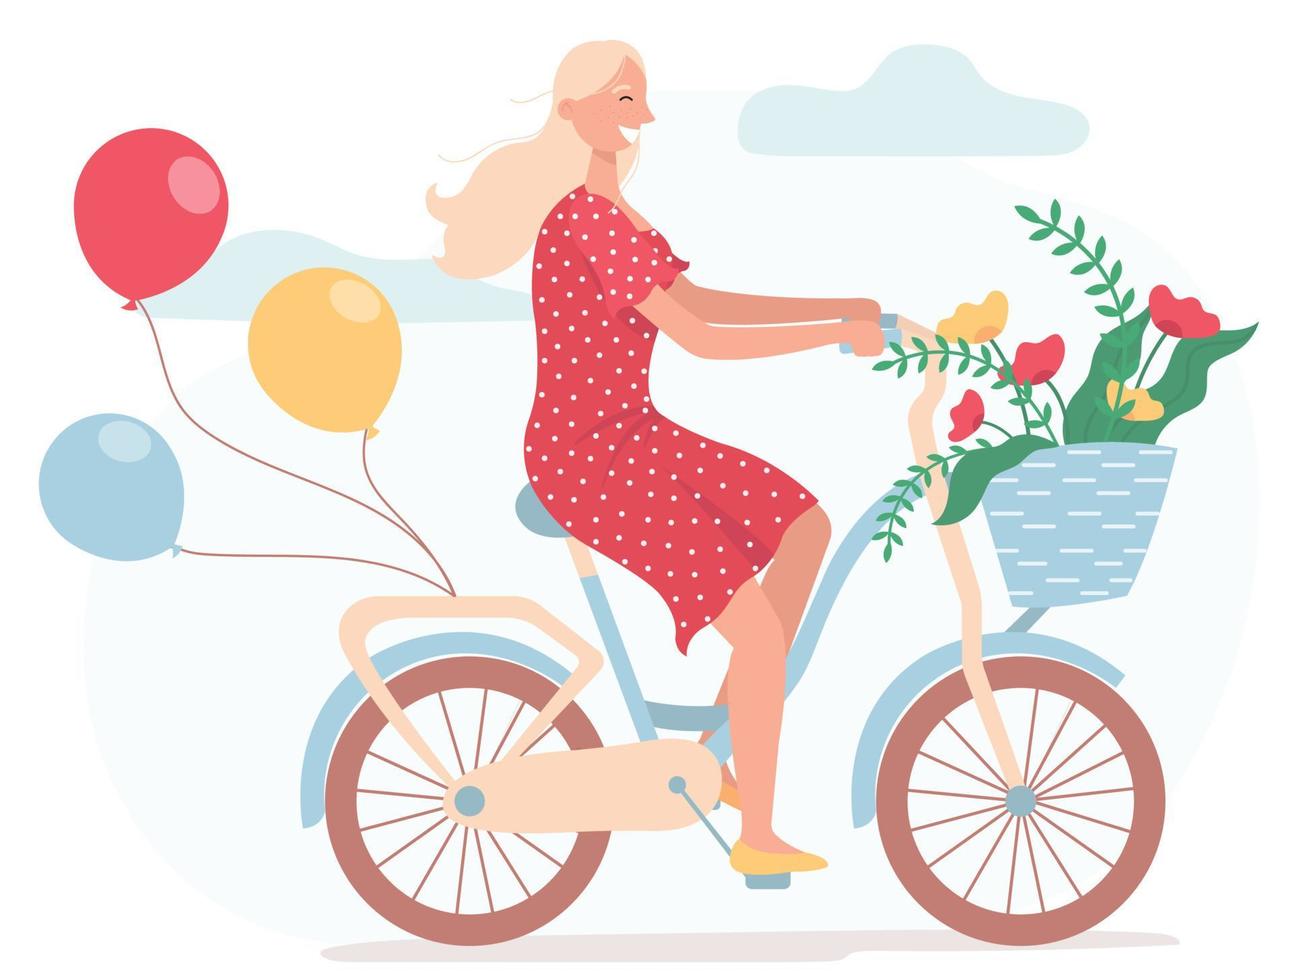 chica sonriente divertida vestida con un vestido rojo montando en bicicleta con globos y con una cesta de mimbre llena de flores de primavera. Linda mujer joven feliz en bicicleta. ilustración de vector plano sobre un fondo blanco.